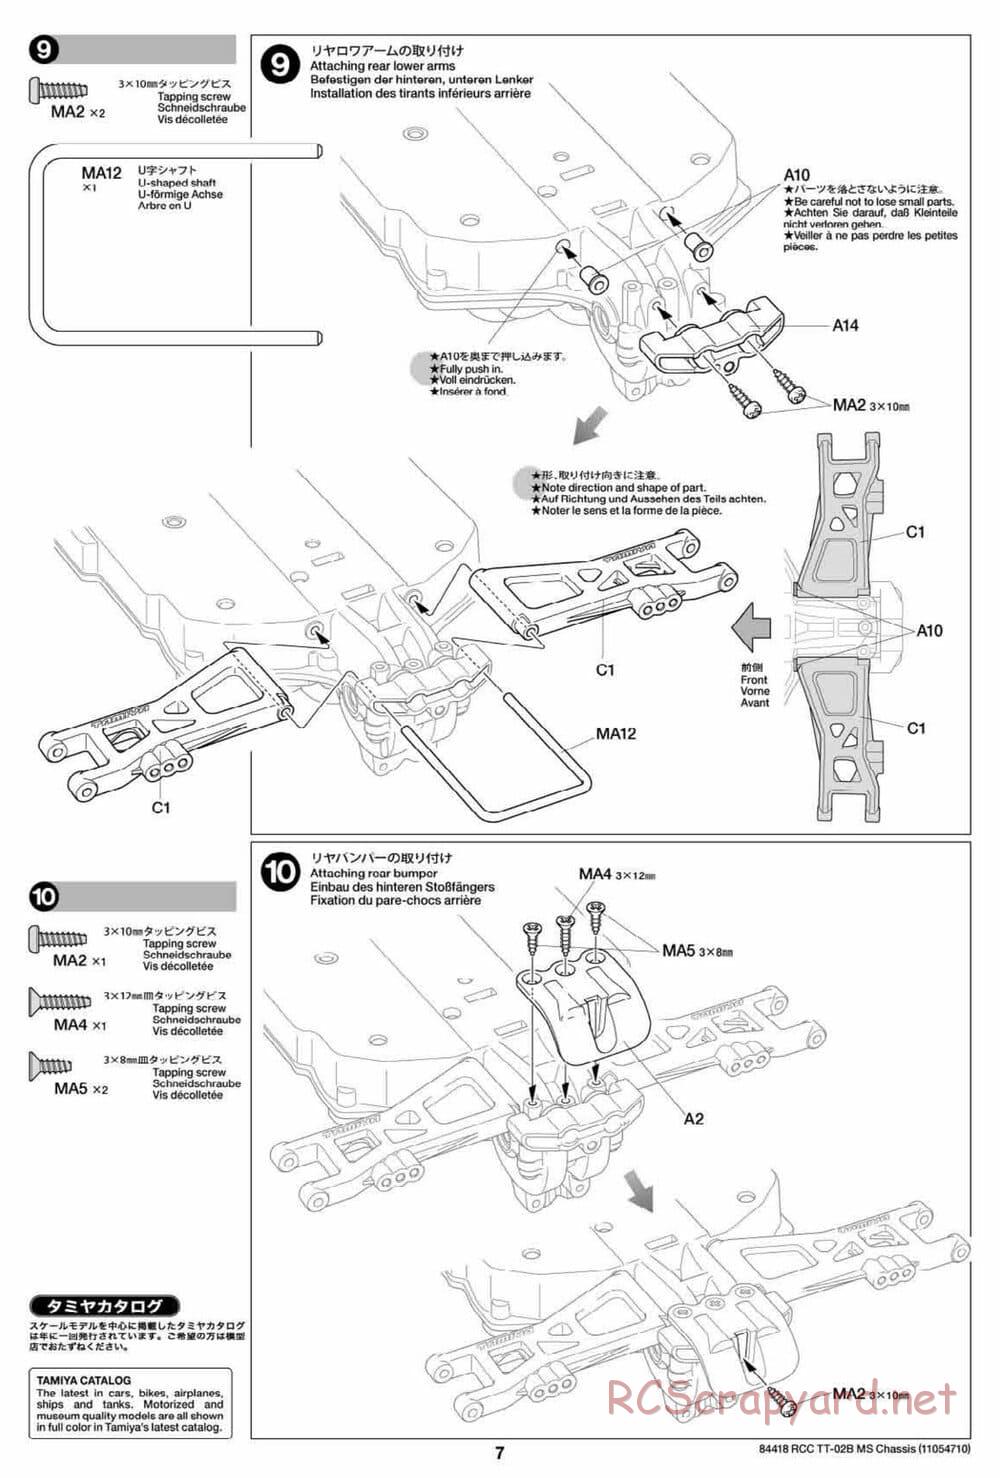 Tamiya - TT-02B MS Chassis - Manual - Page 7